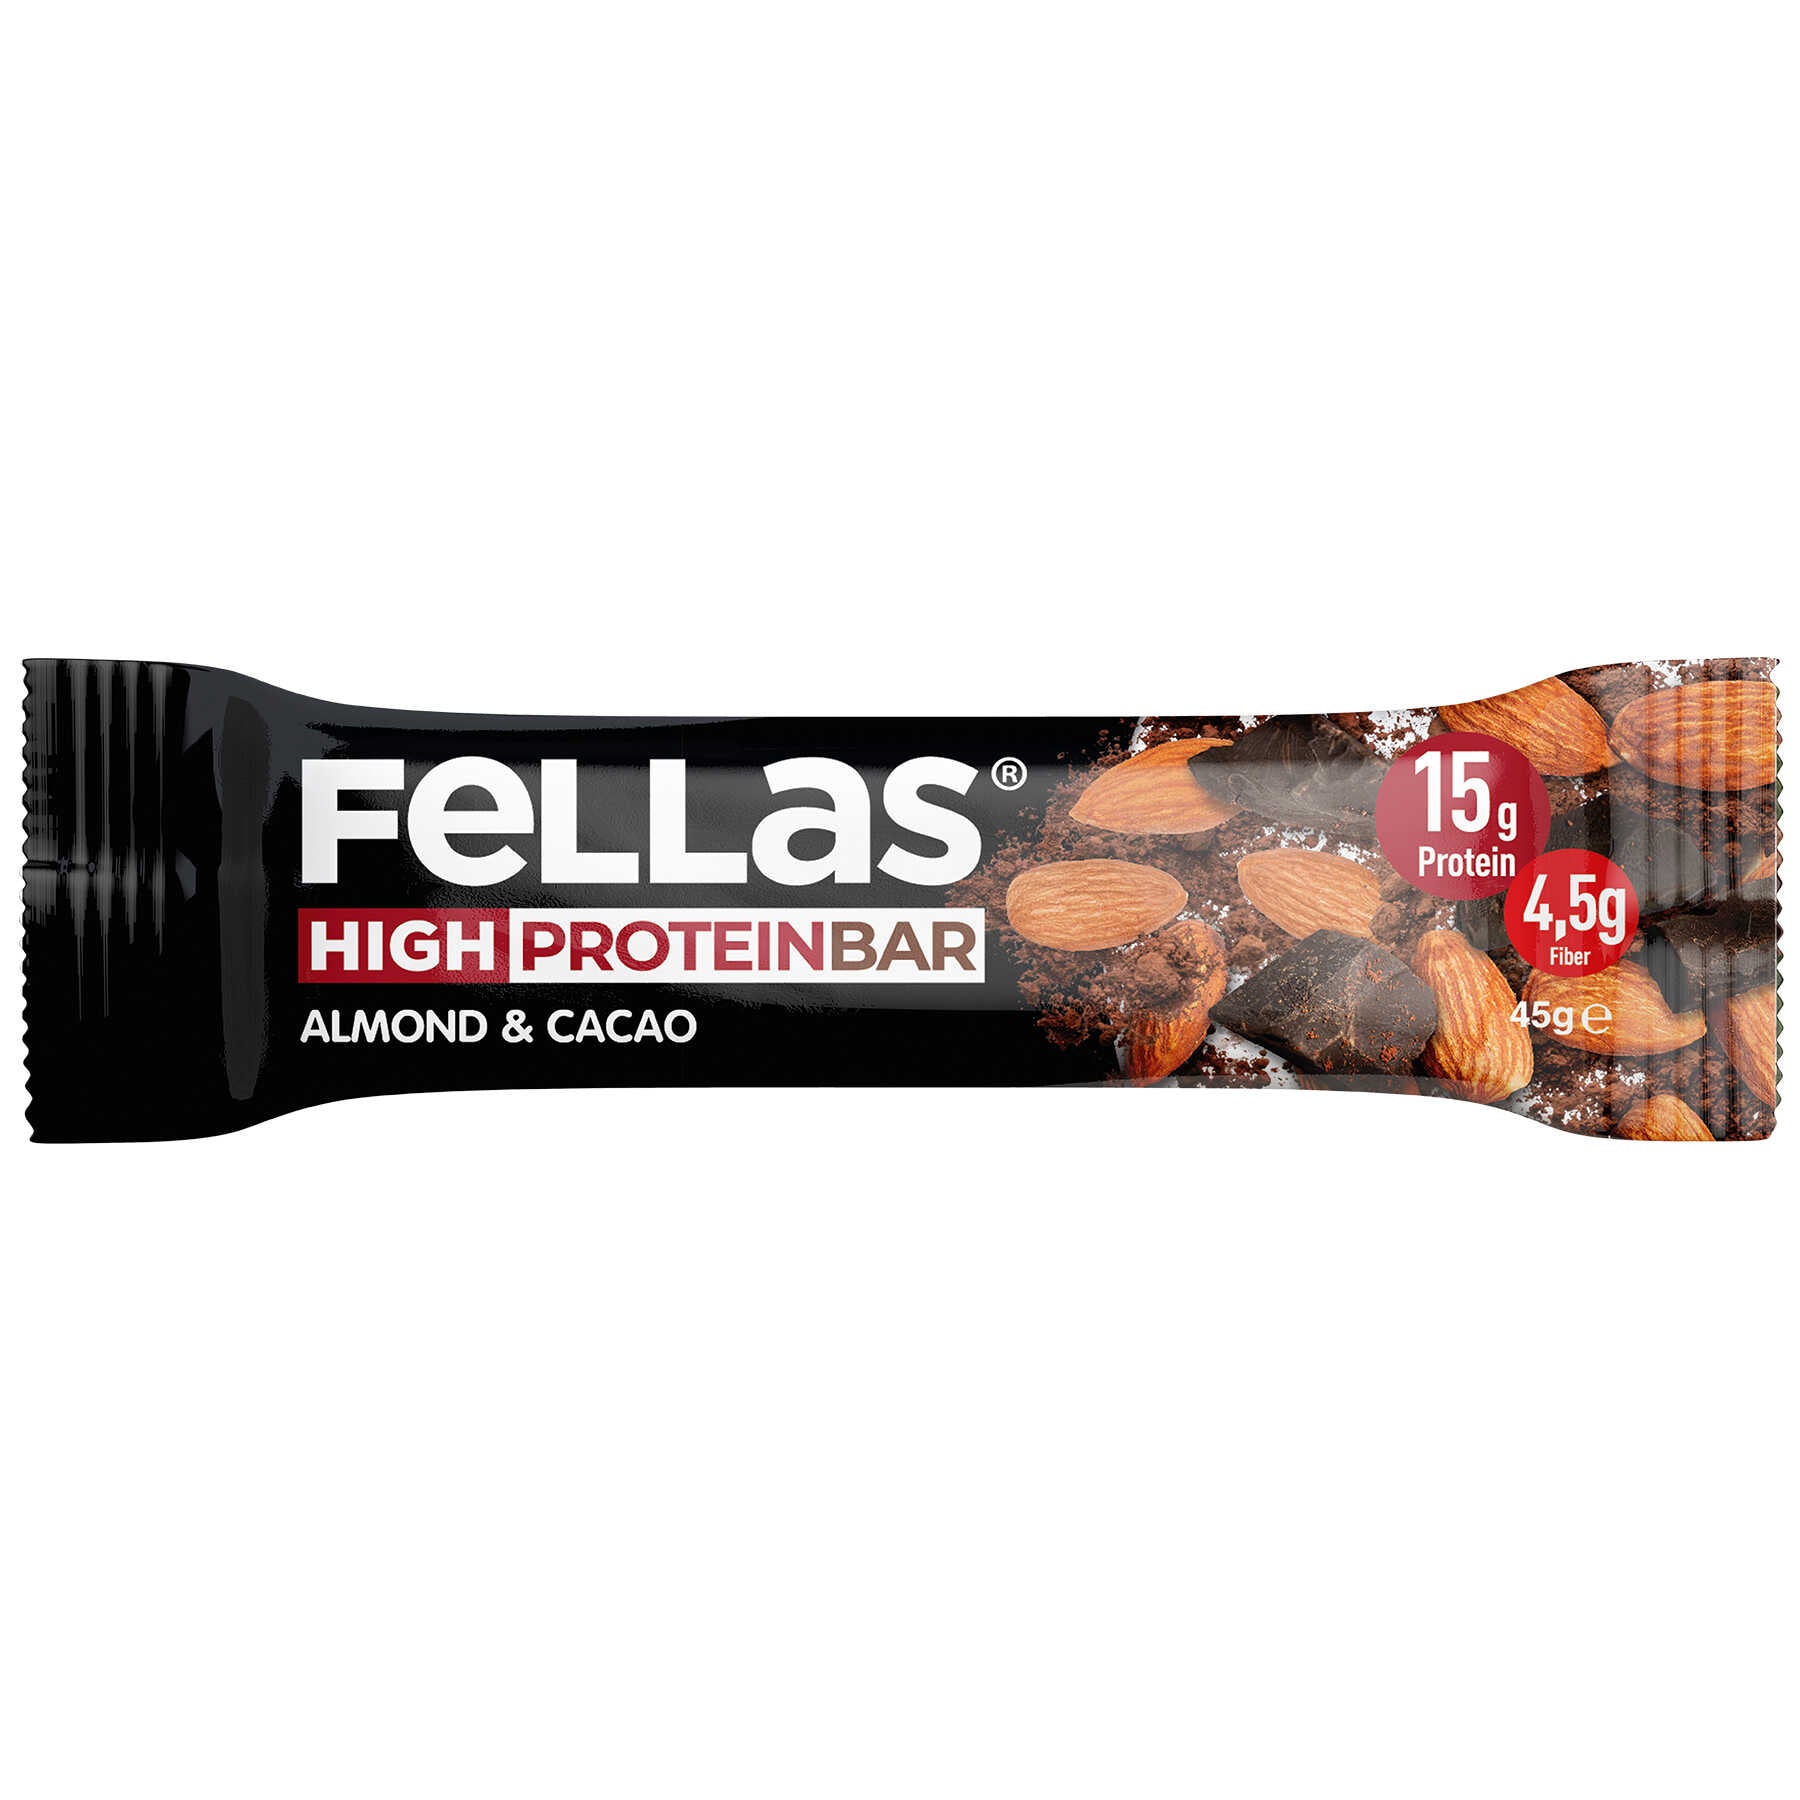 High Protein Bar - Mixed Box 45g x 12 (3 Flavors)